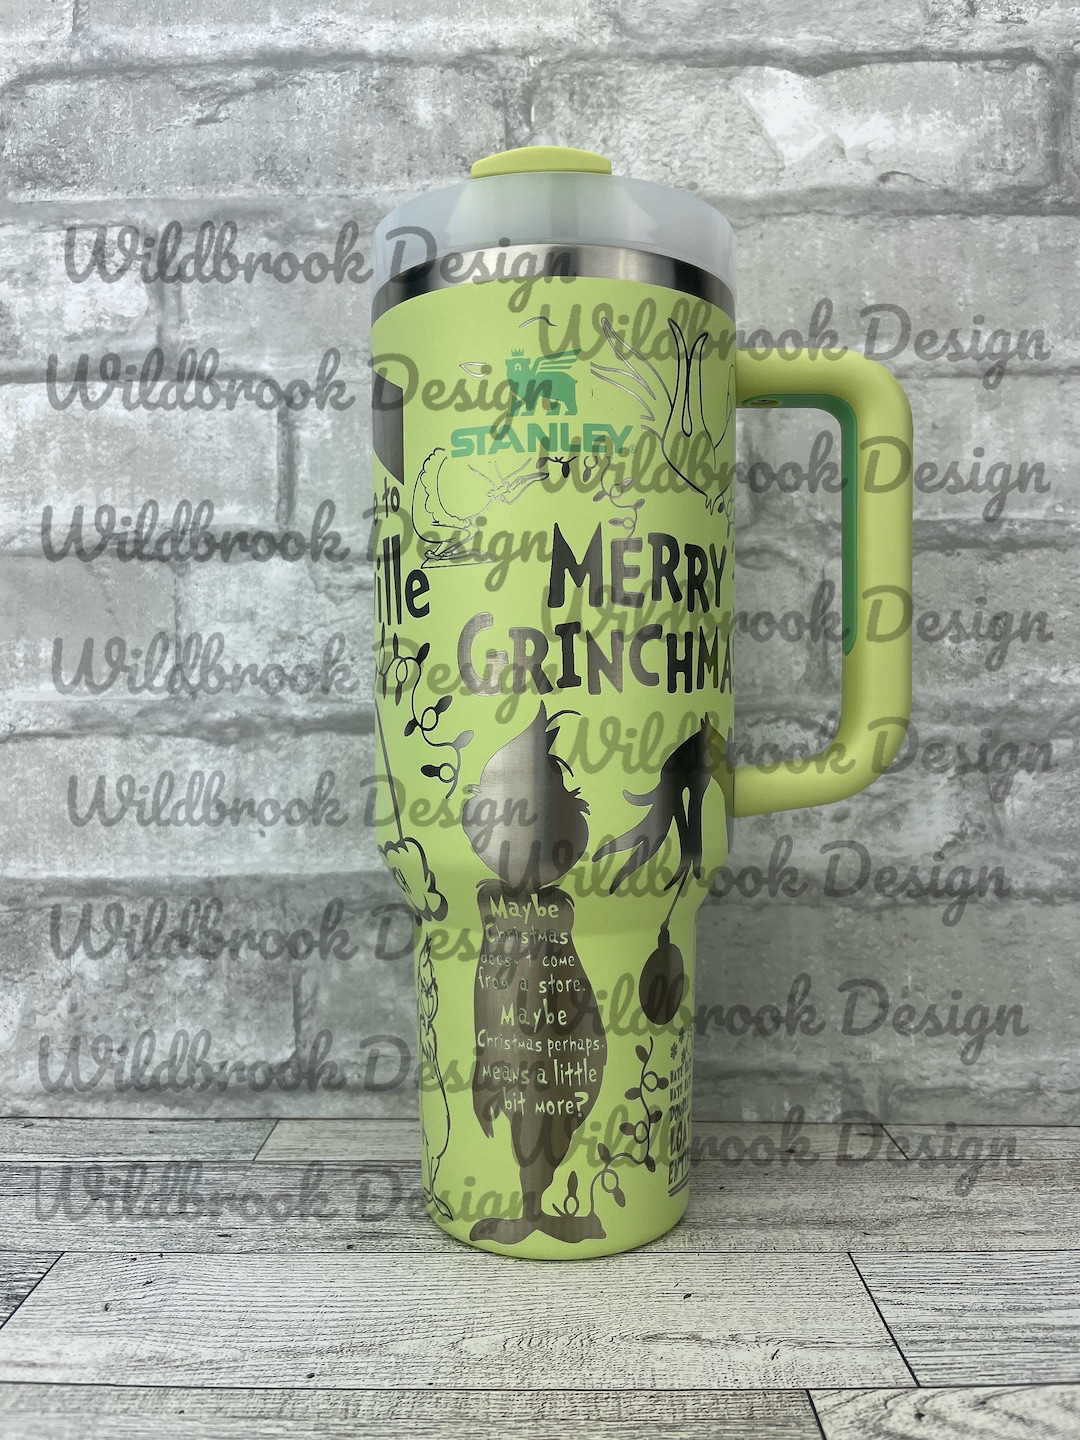 Stanley Beer Mug Adventure Vacuum 0.7 L green